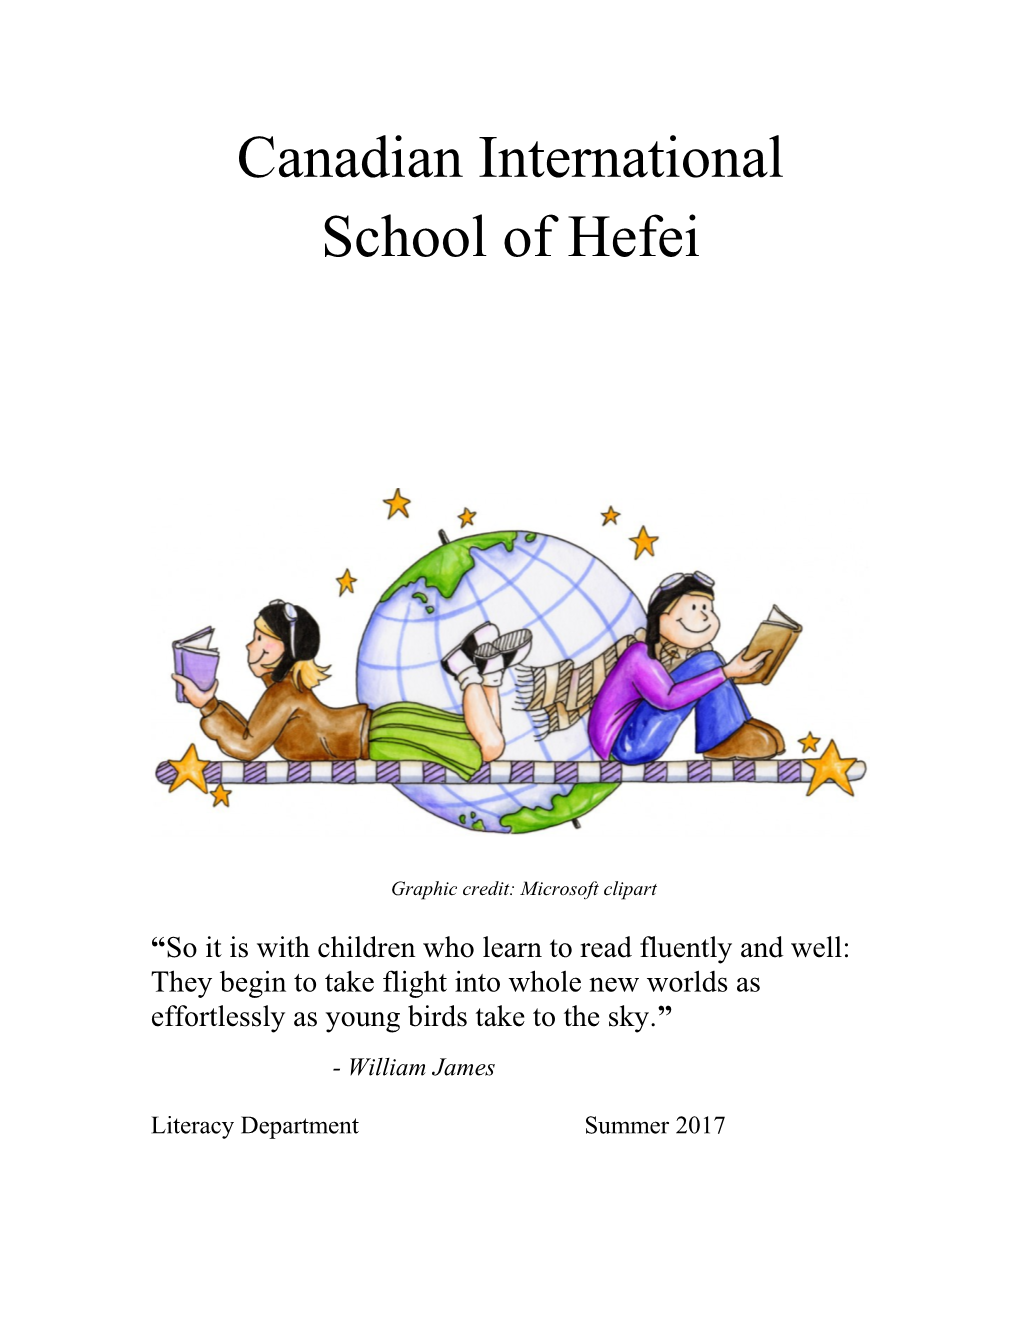 Canadian International School of Hefei